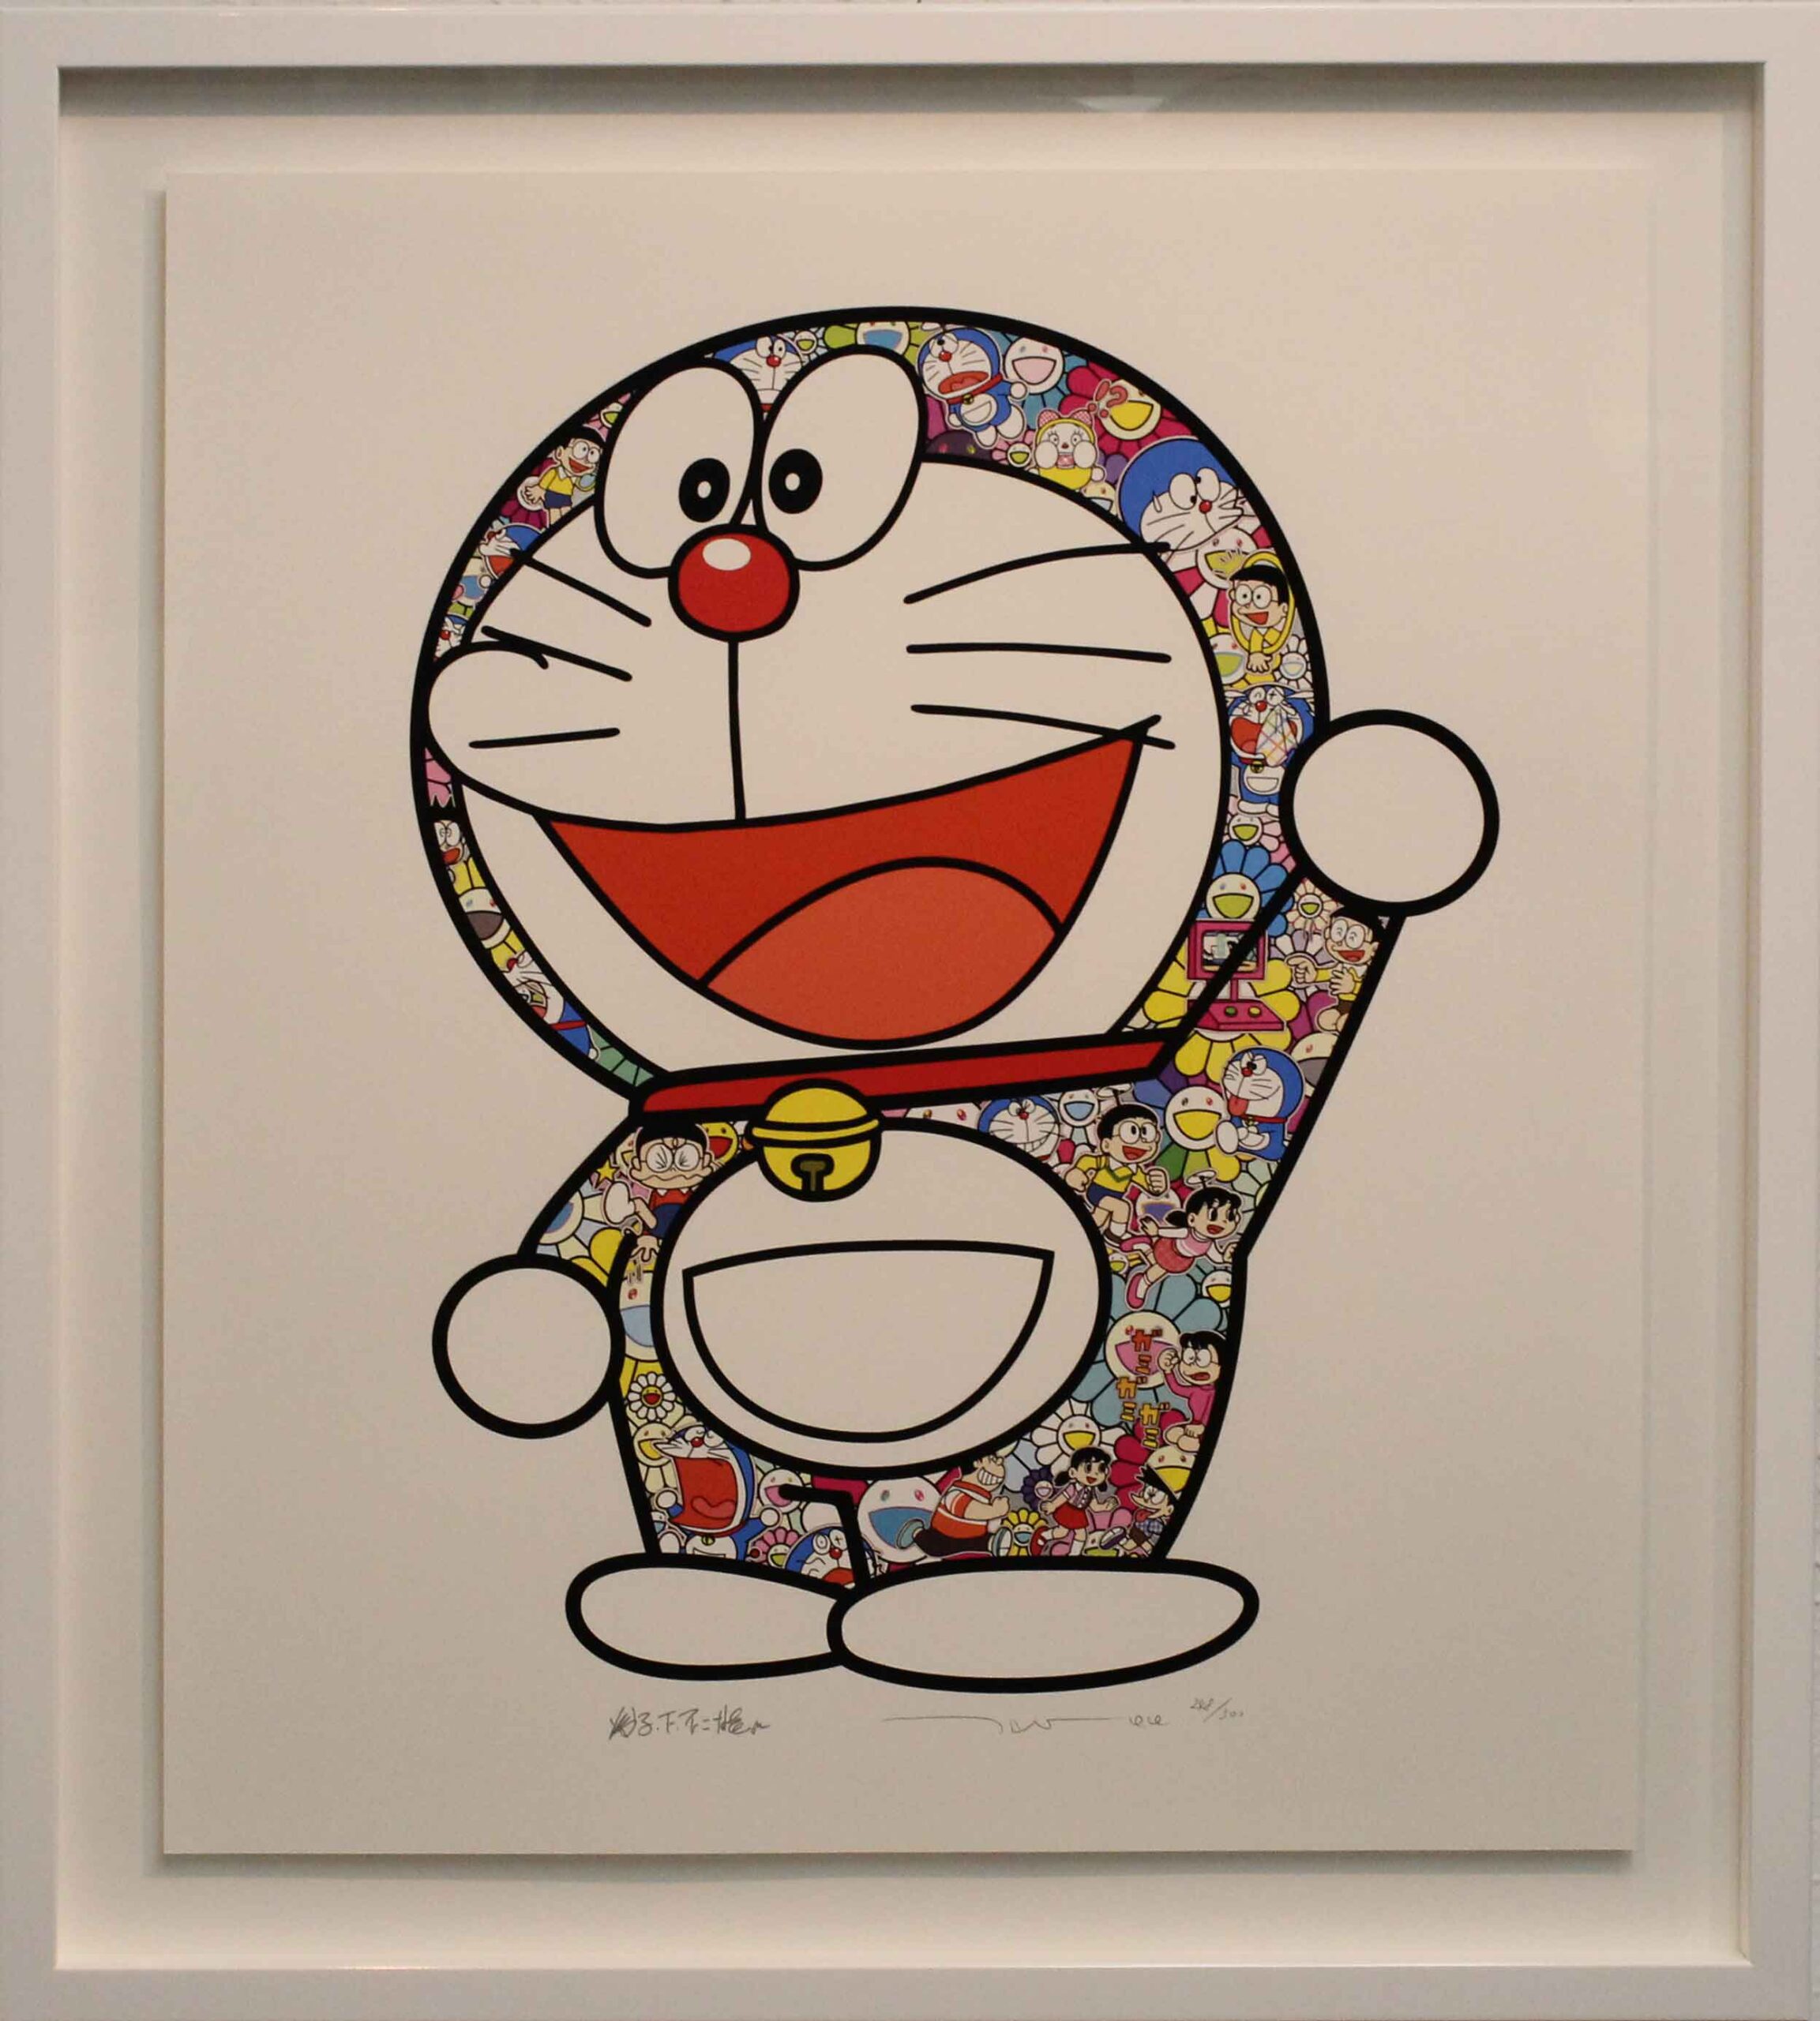 ドラえもん さあ 行くぞ Doraemon Here We Go 株式会社 画廊松徳